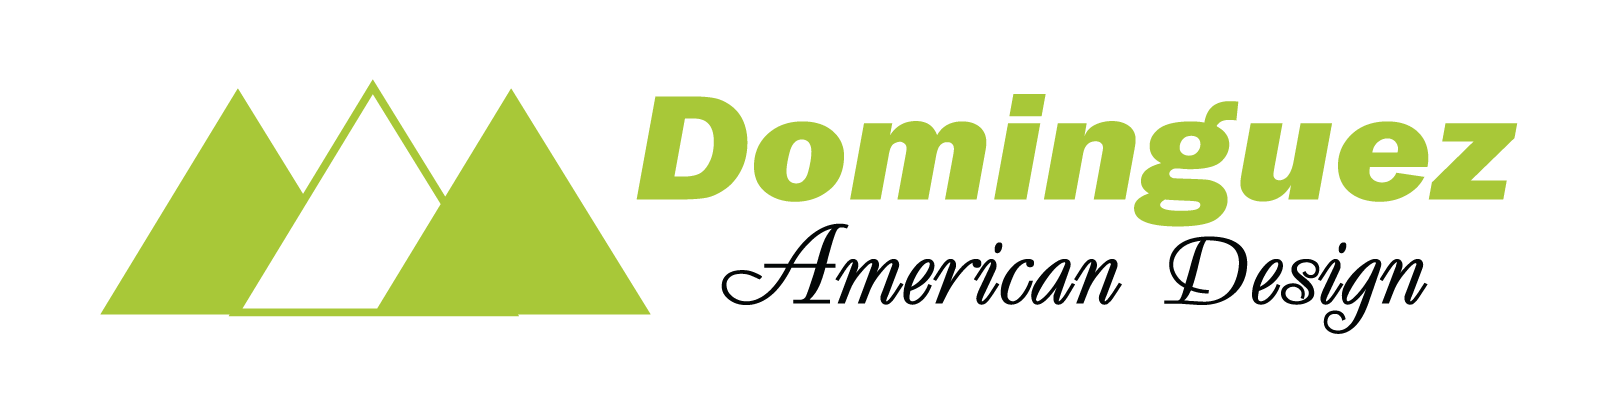 Dominguez American Design